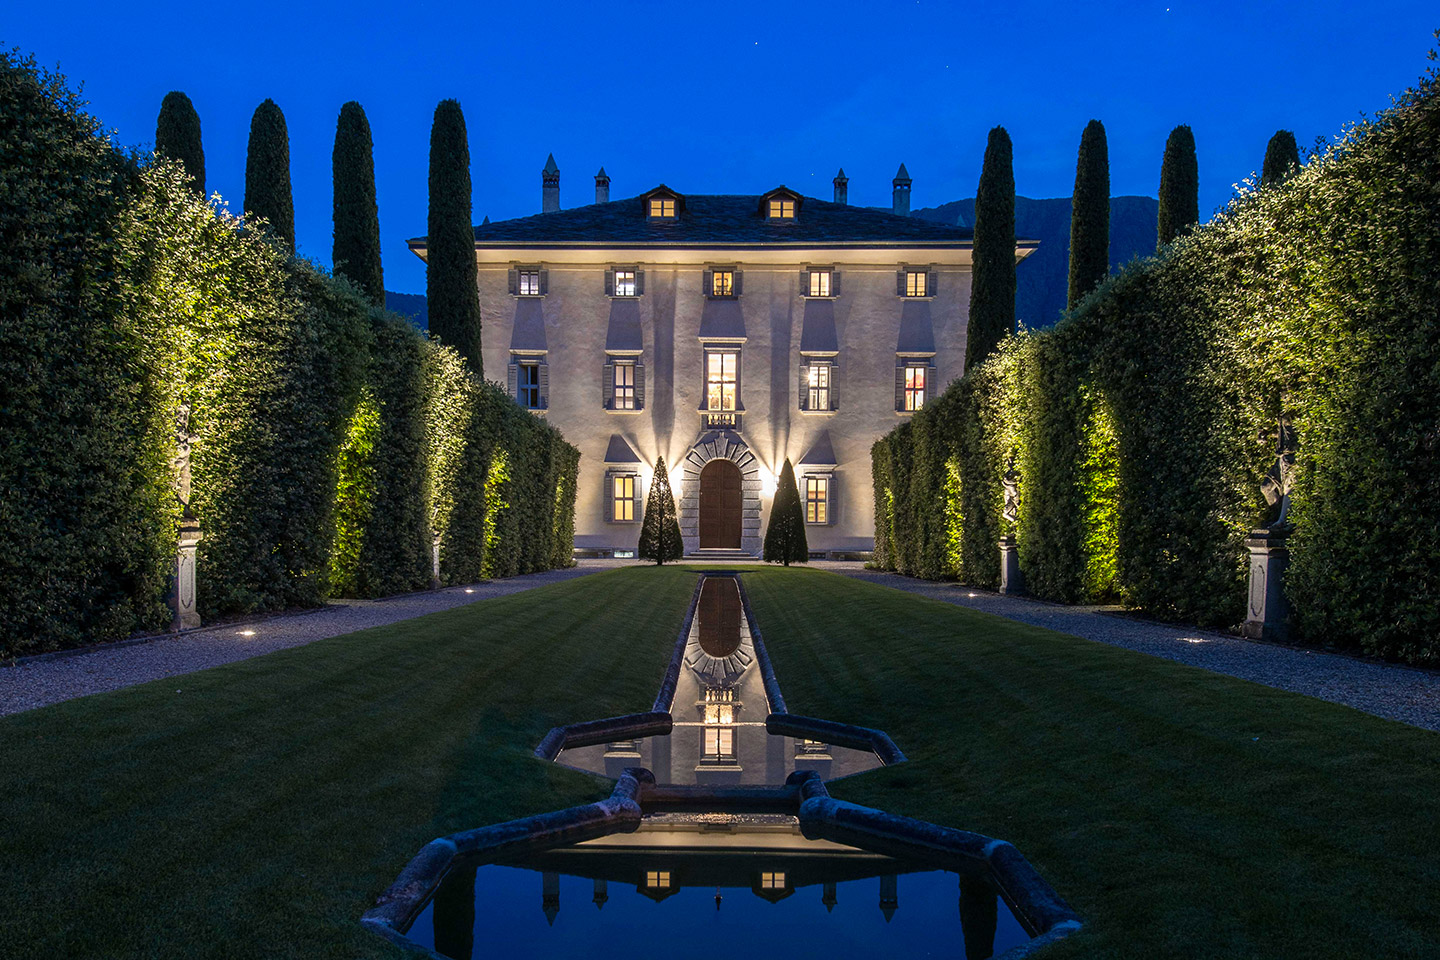 Villa Balbiano, location di lusso per matrimoni